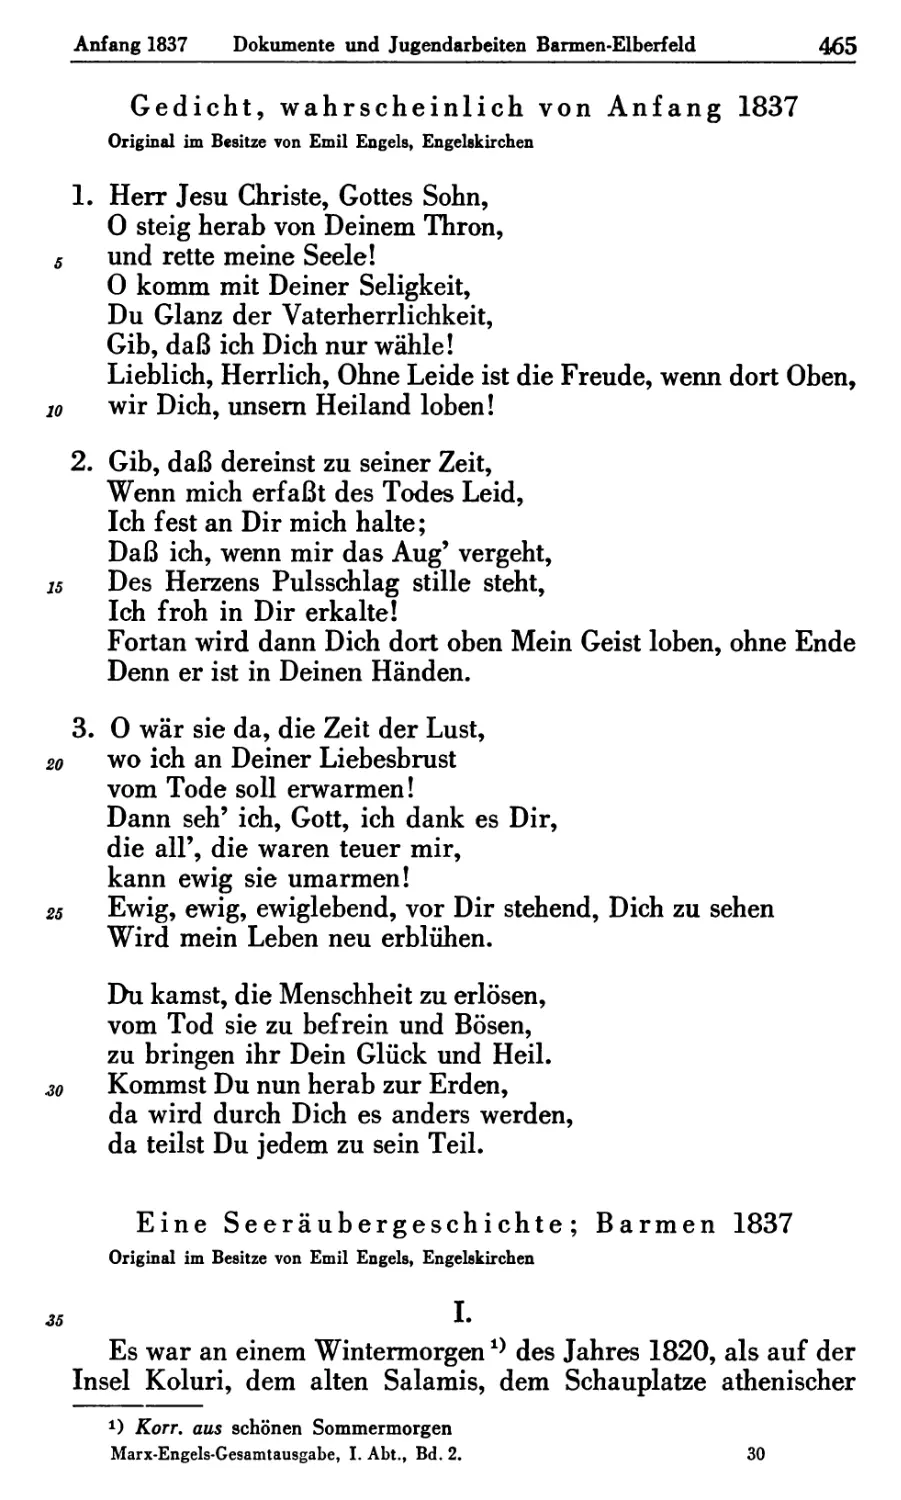 6. Gedicht wahrscheinlich von Anfang 1837
7. Eine Seeräubergeschichte